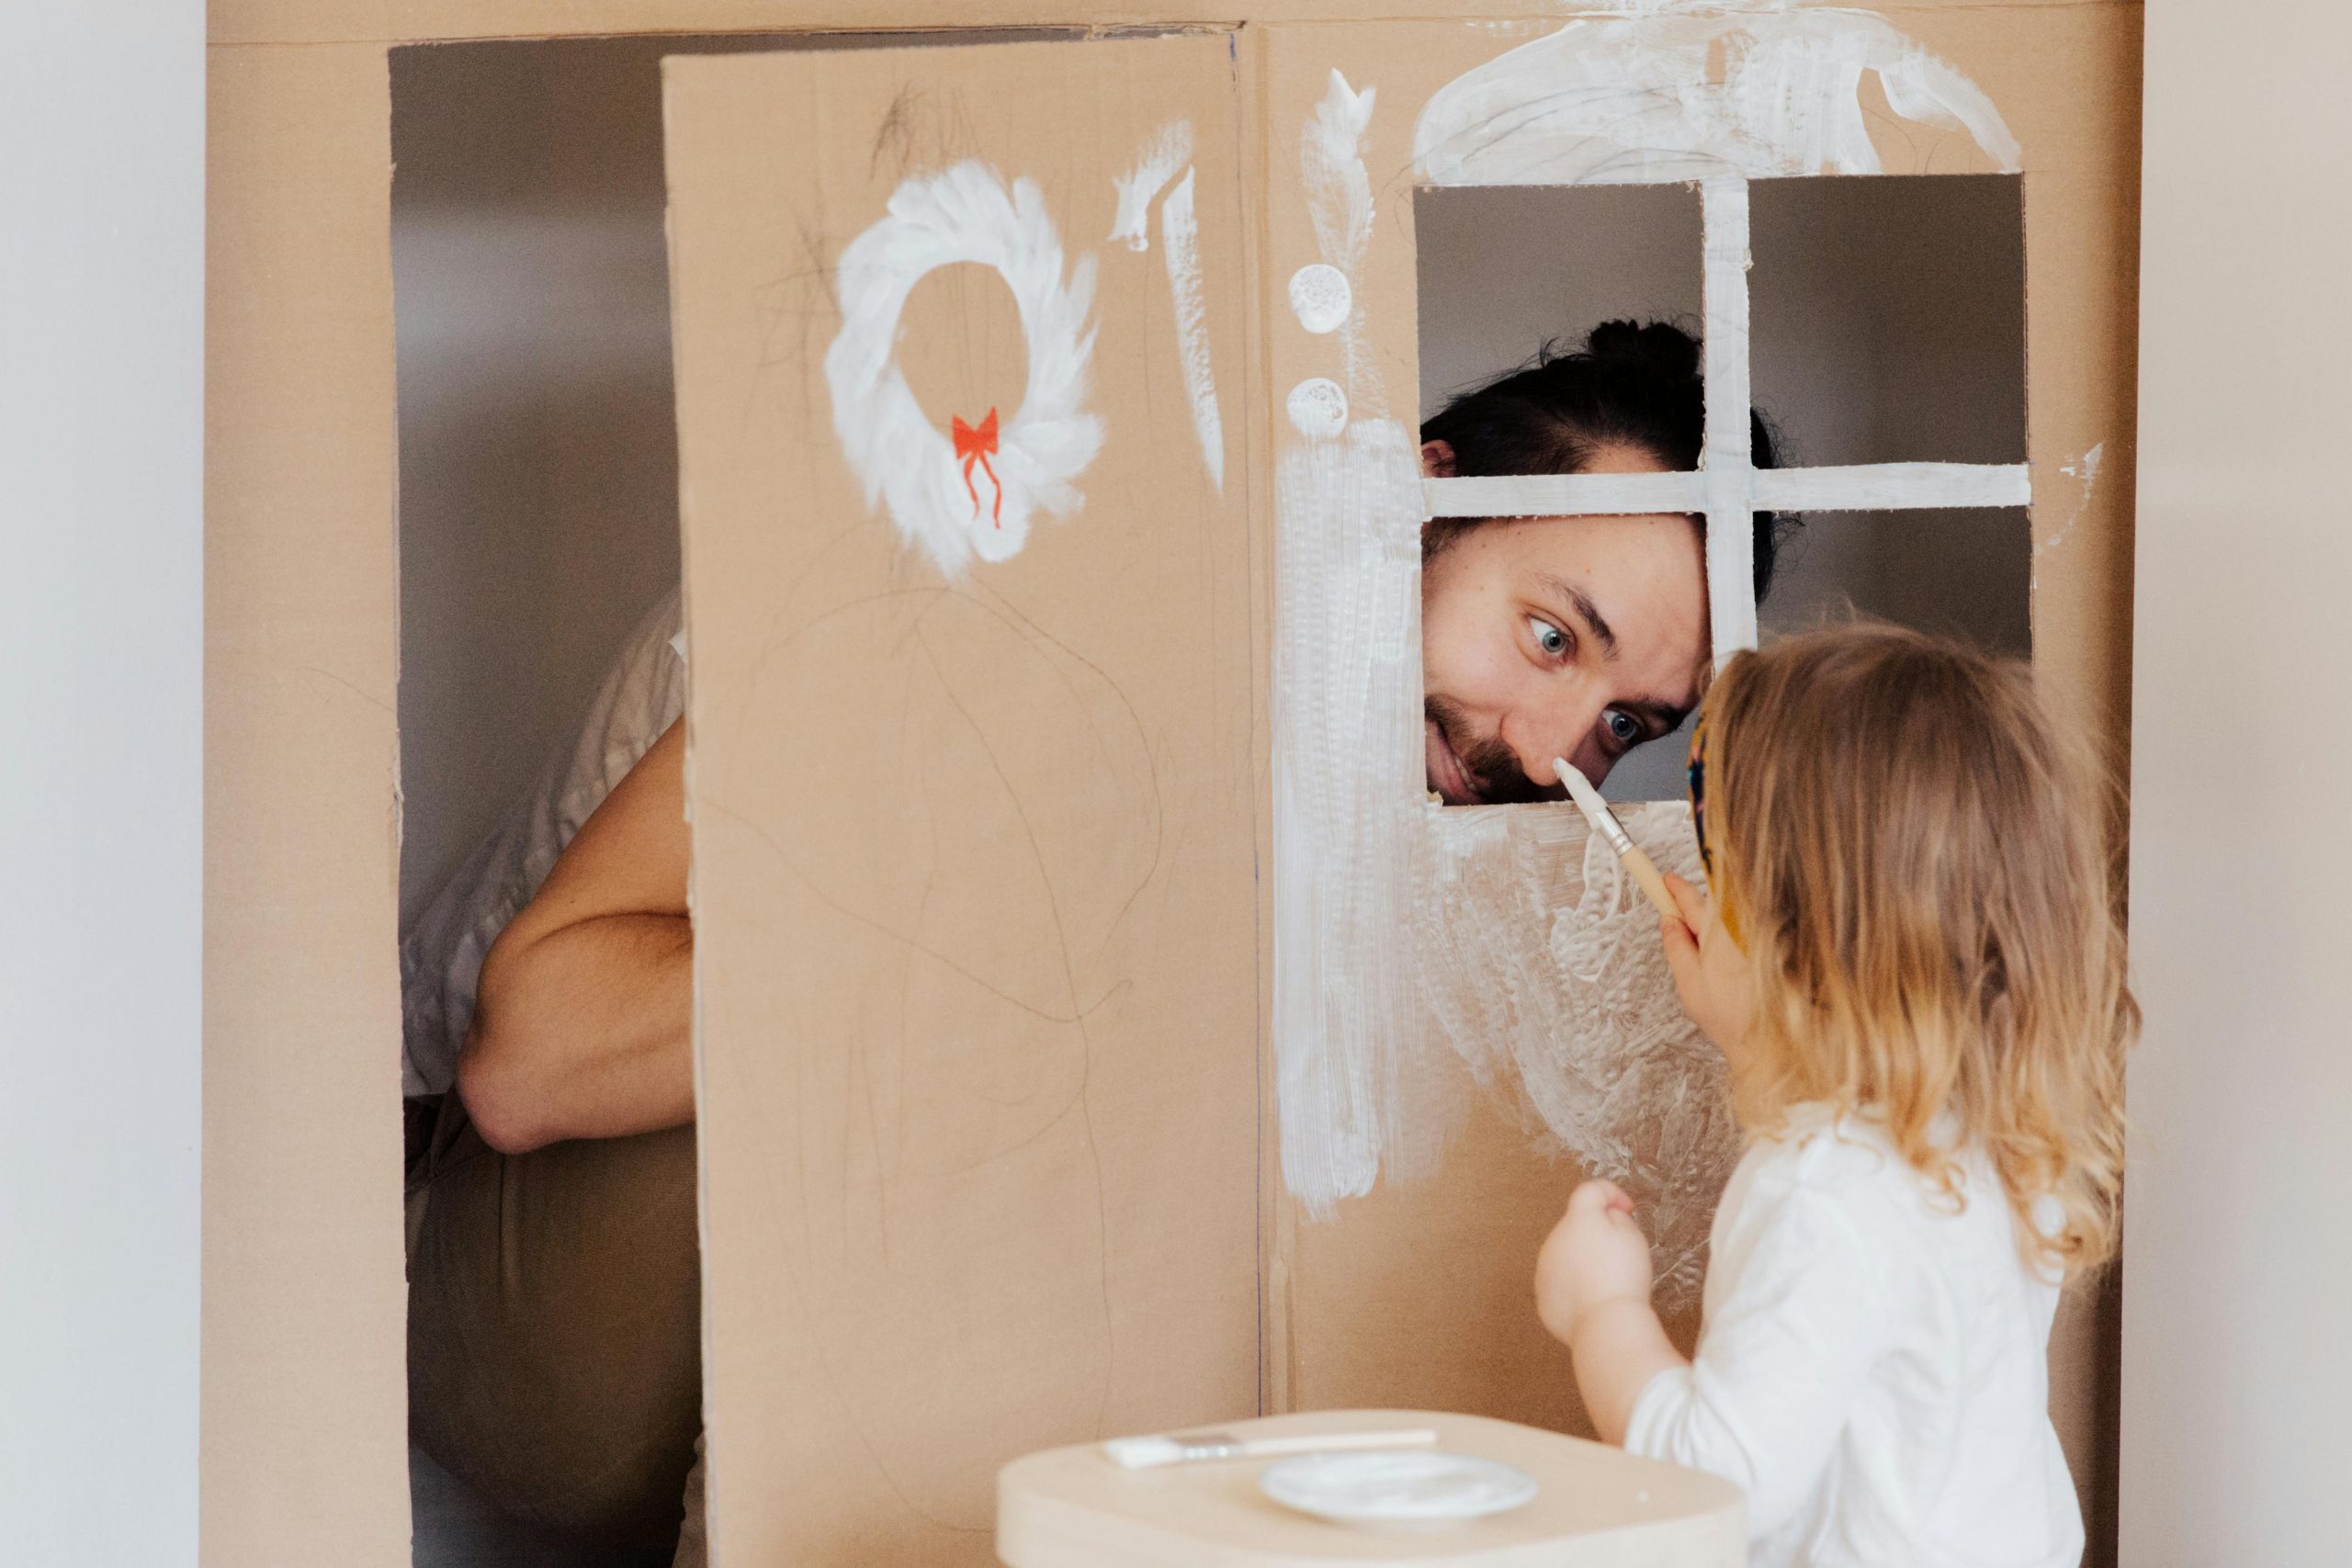 padre haciendo una casa de carton con su hija